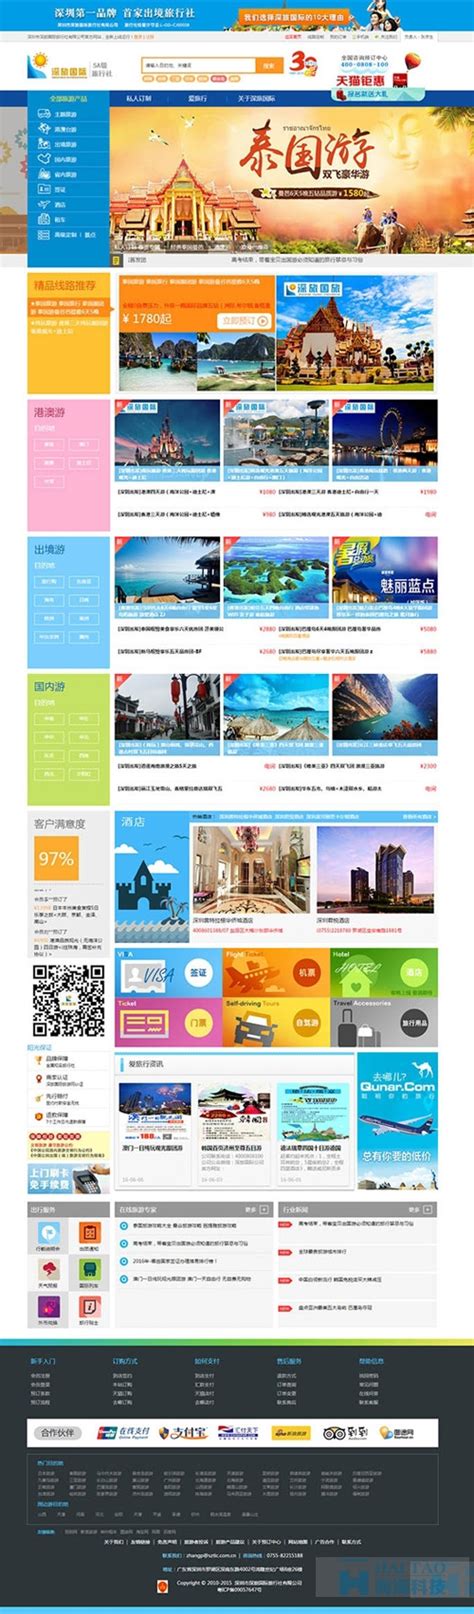 深旅国际旅行社旅游网站建设策划,旅游类网站建设,上海旅游网站的建设-海淘科技